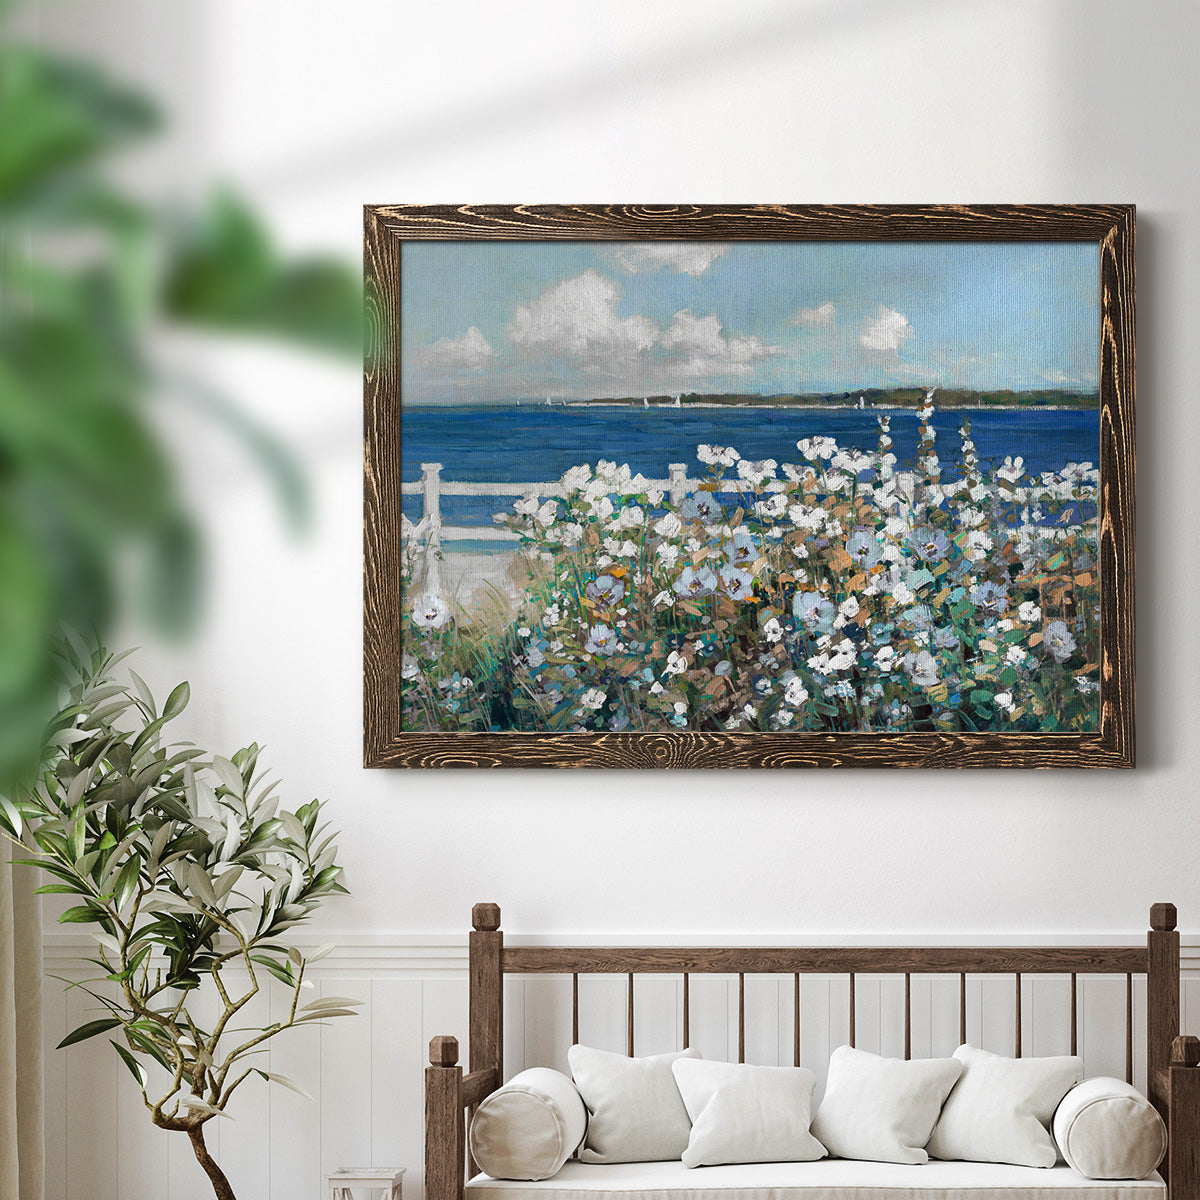 Bayside Garden-Premium Framed Canvas - Ready to Hang